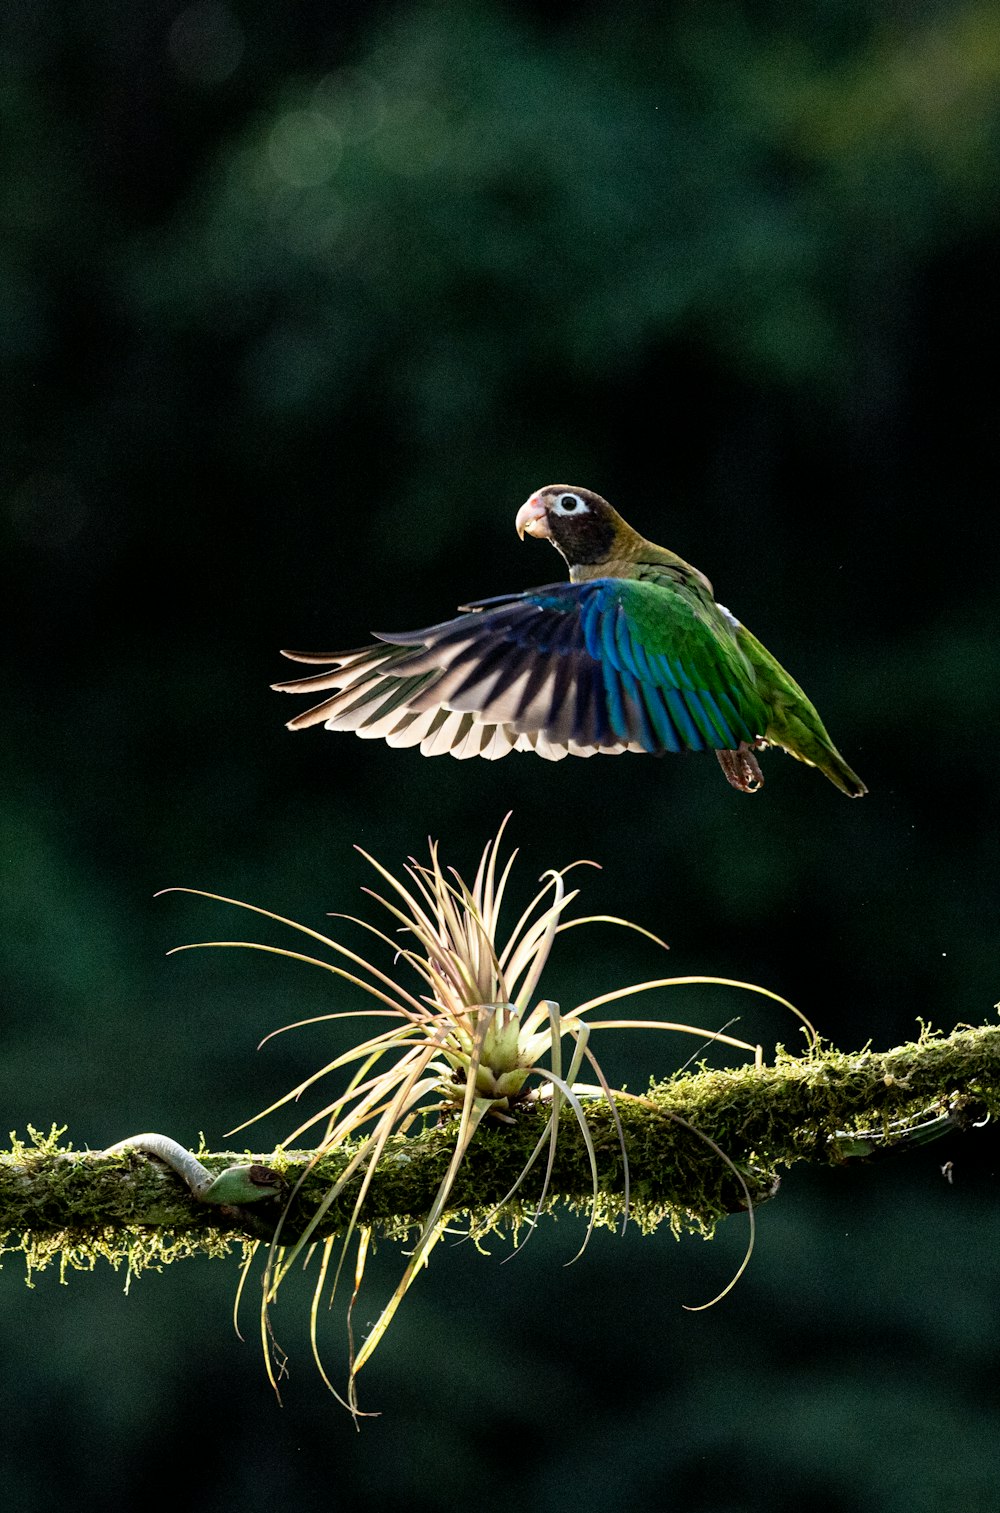 Un oiseau coloré volant au-dessus d’une branche couverte de mousse